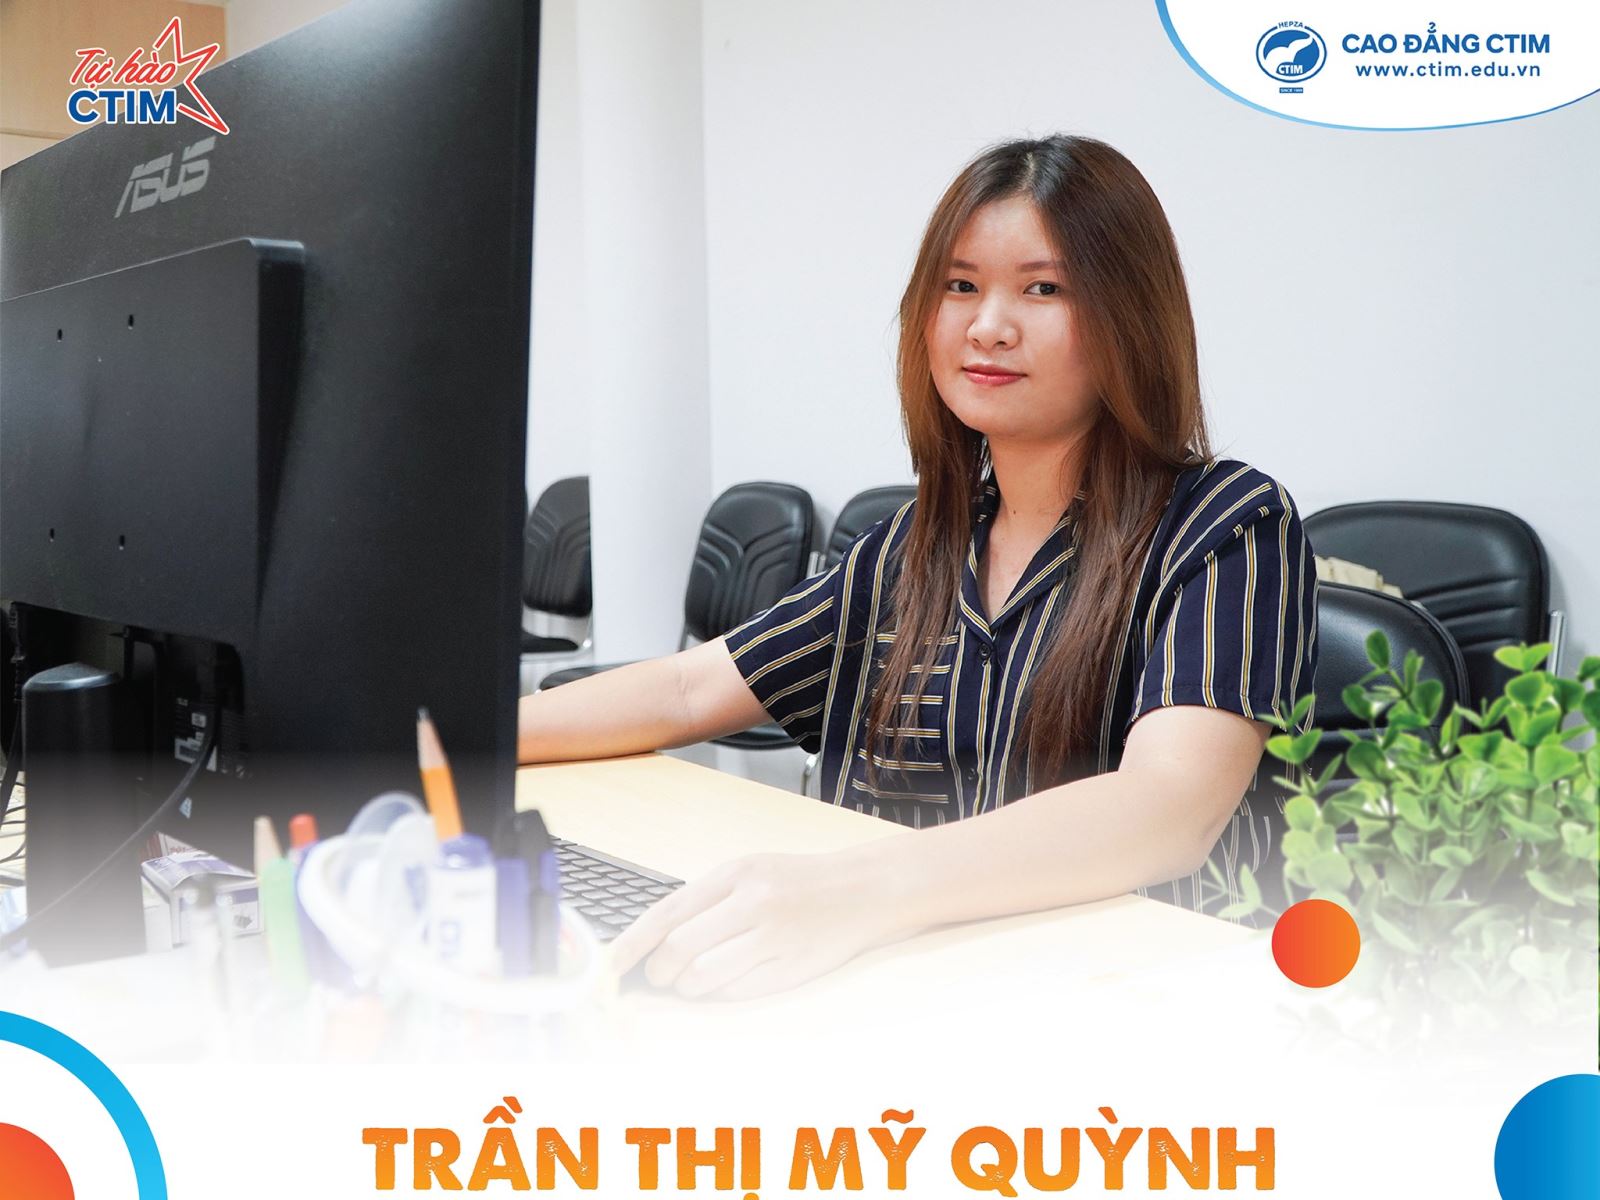 Trần Thị Mỹ Quỳnh - cựu HS THPT Ngô Quyền, Quận 7